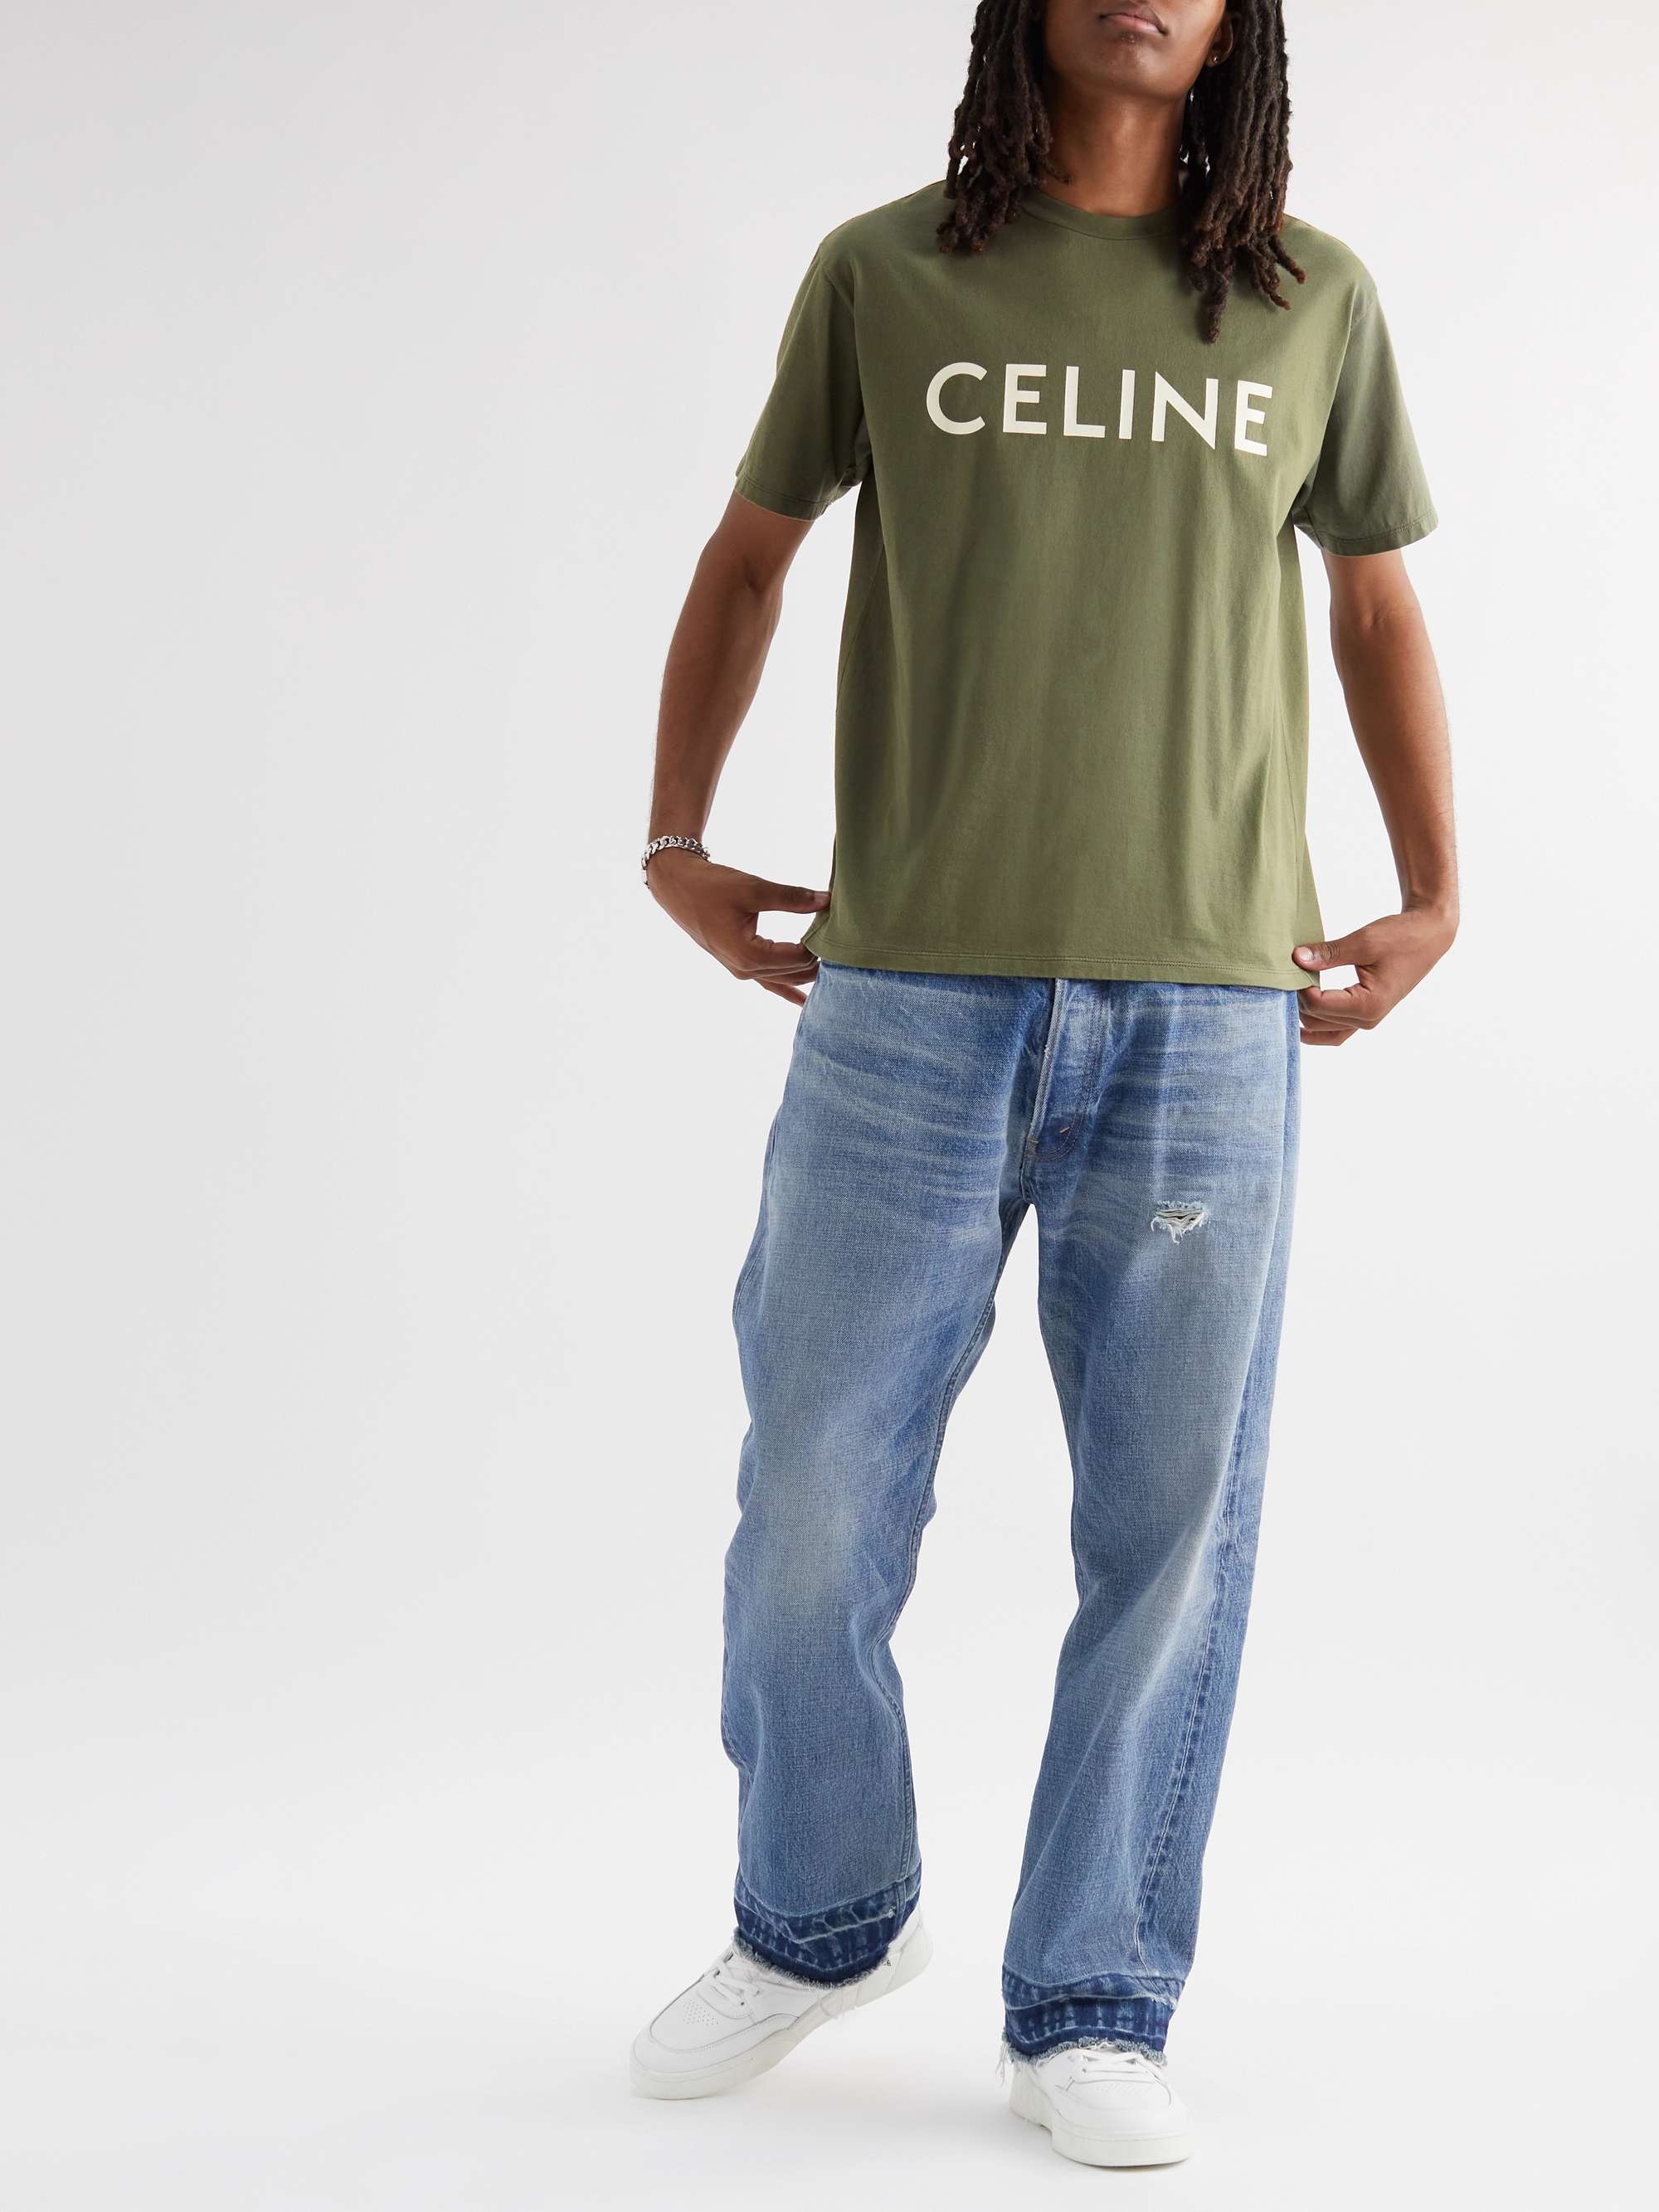 Celine Paris Men T Shirt